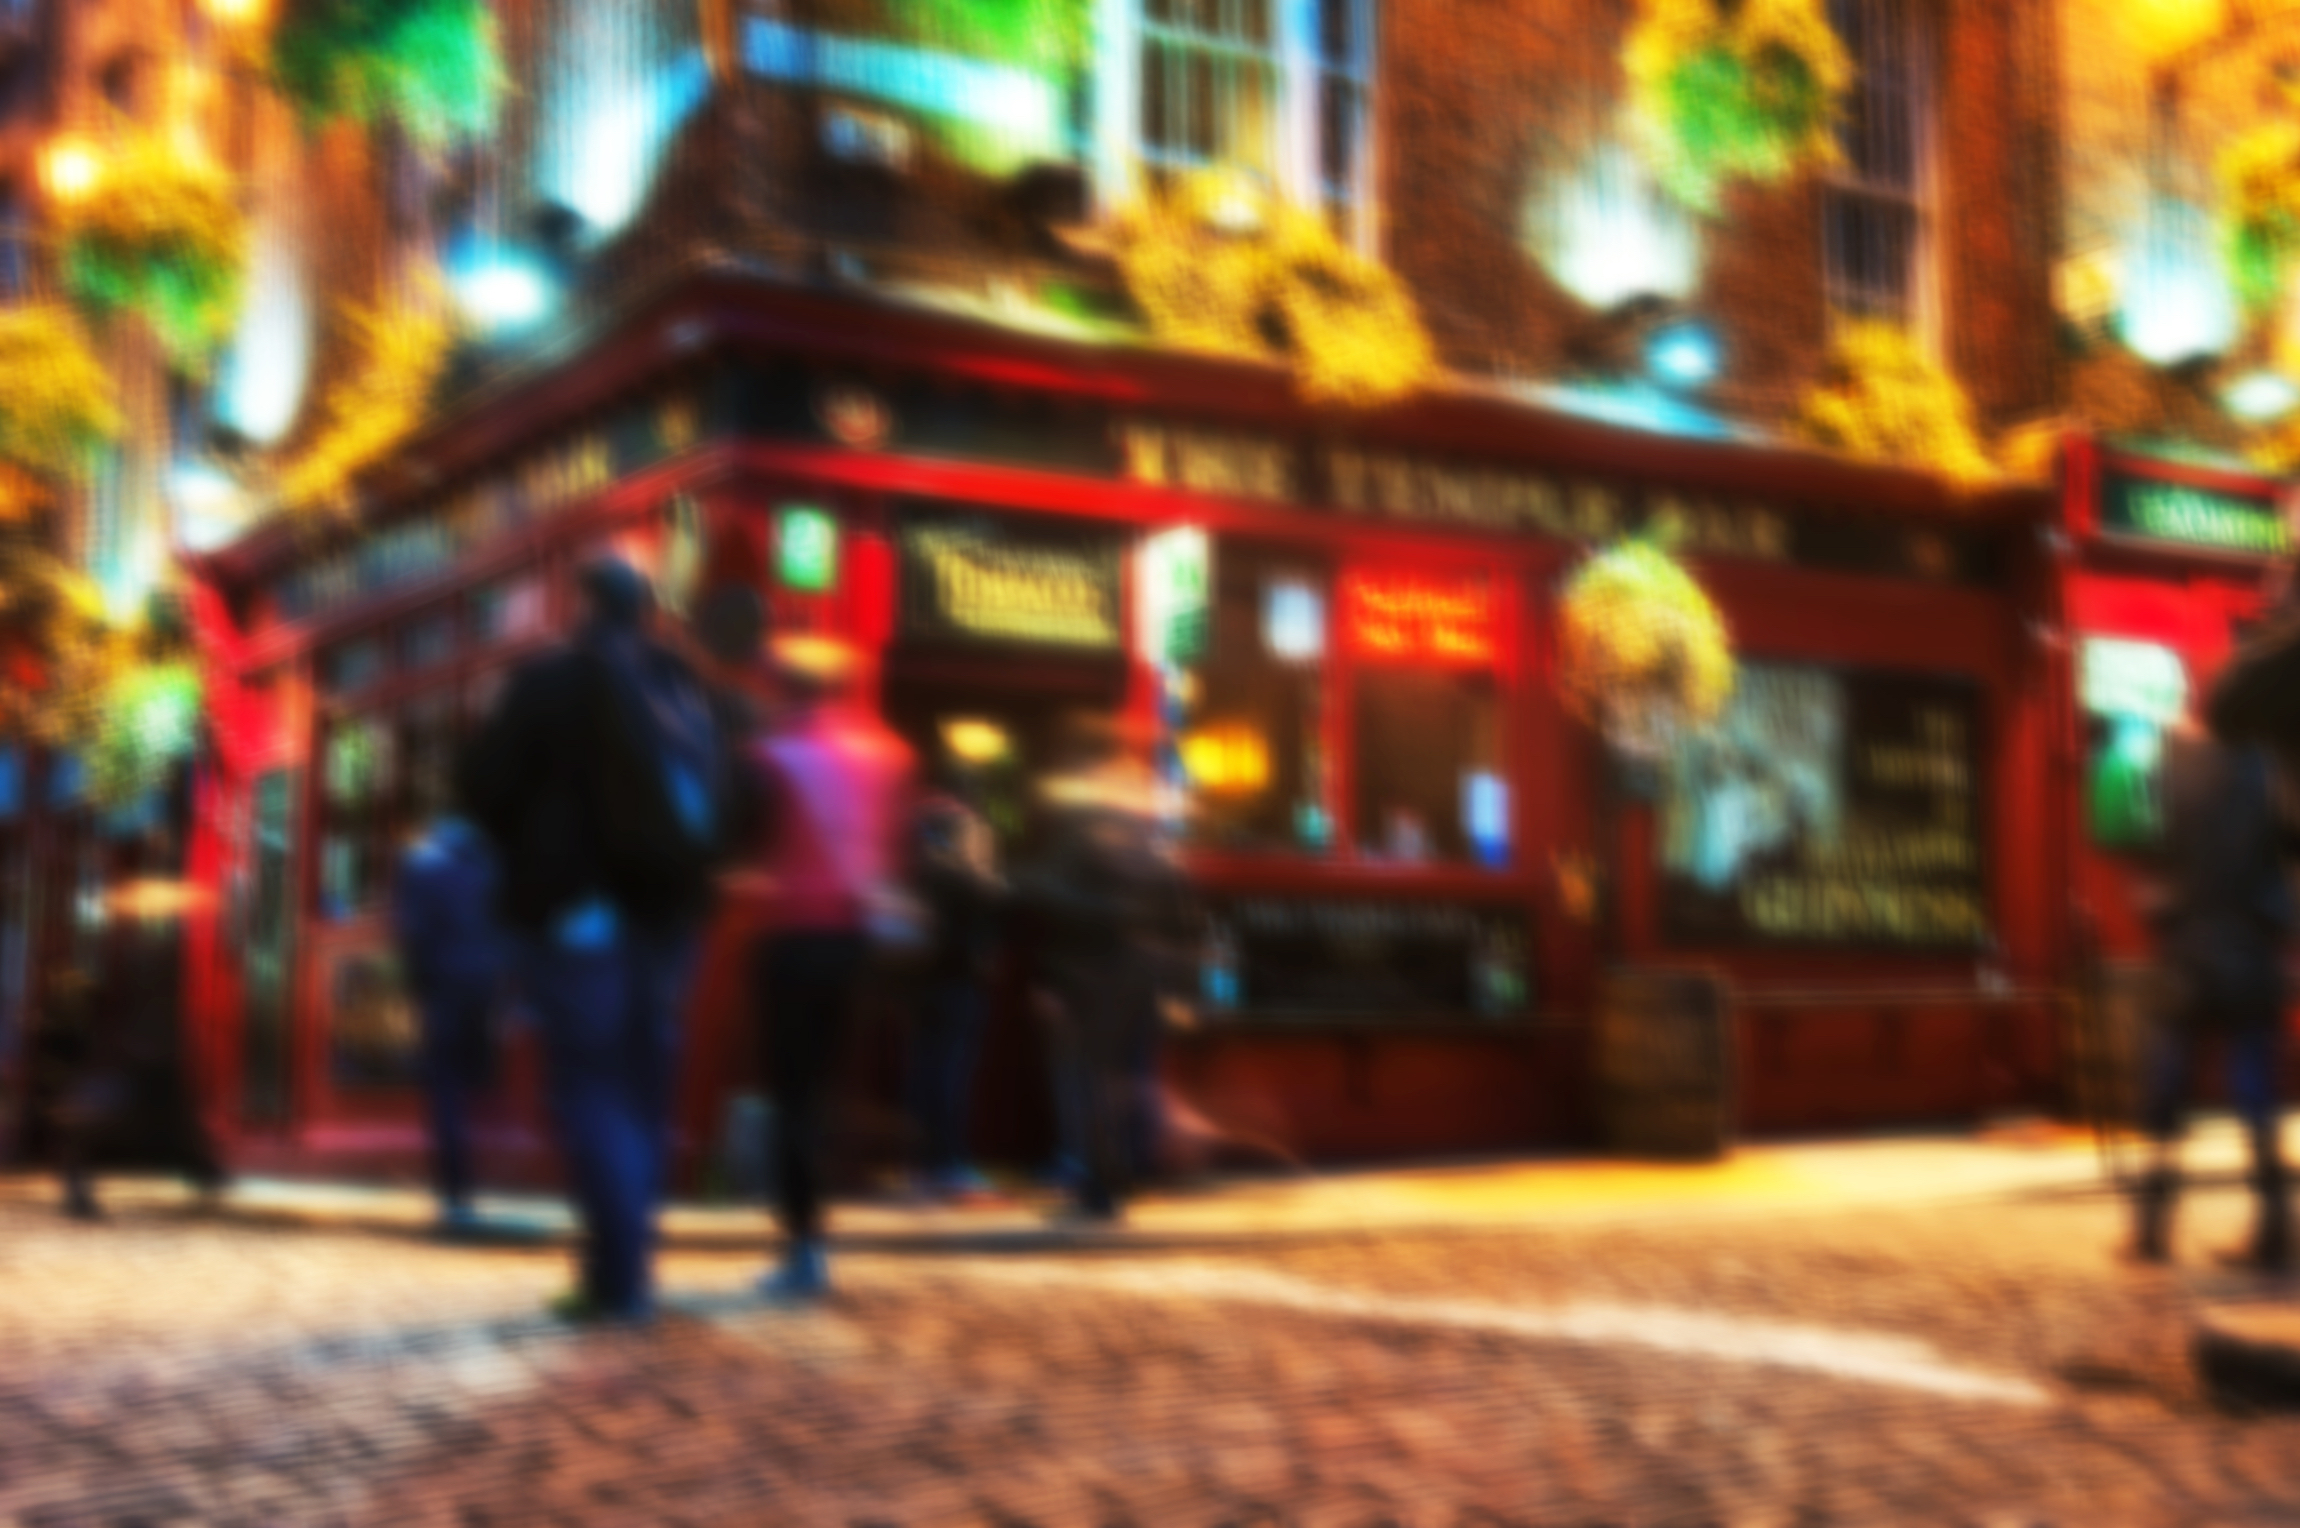 Rozmyte tła z podróży - Życie nocne w popularnej historycznej części Dublina w Irlandii - dzielnicy Temple Bar.W okolicy znajduje się wiele barów, pubów i restauracji. Ludzie spacerujący wewnątrz pubu